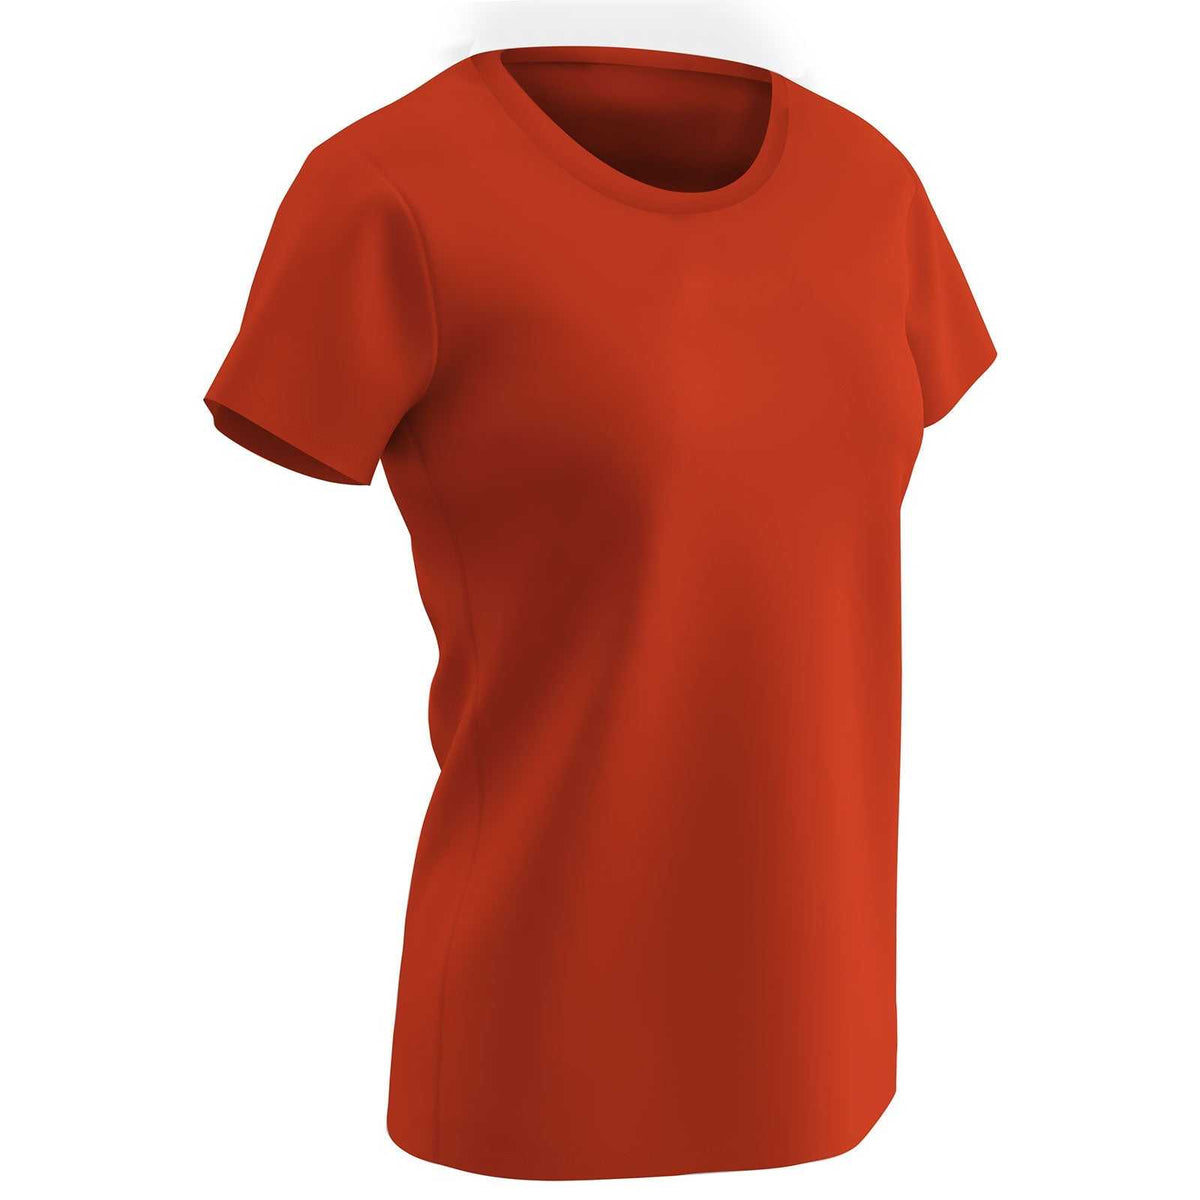 Champro BST99W Vision T-Shirt - Orange - HIT a Double